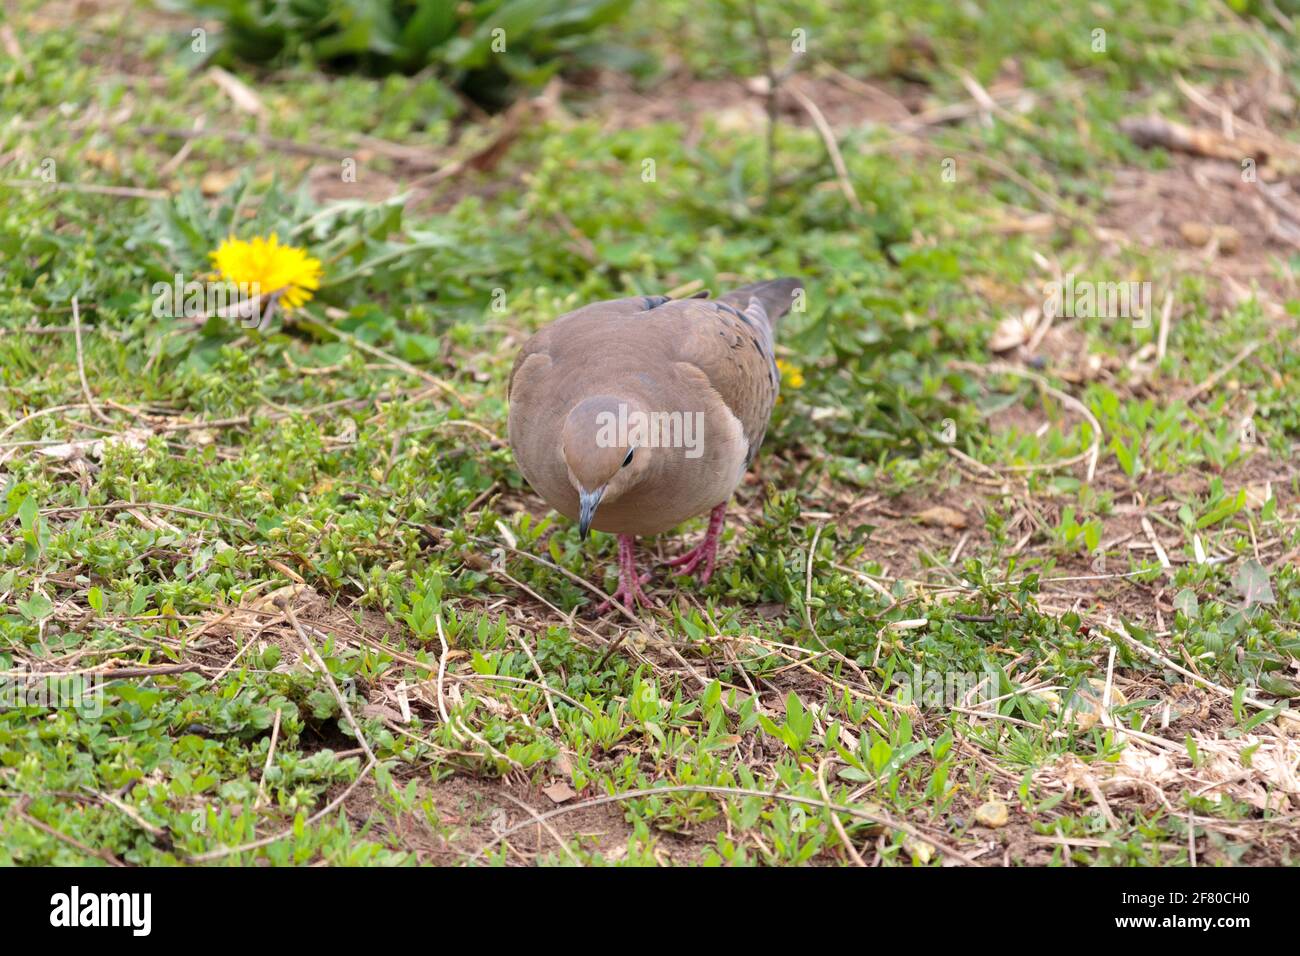 Una paloma de luto hembra que busca comida en la hierba mirando directamente a la cámara, a principios de la primavera Foto de stock